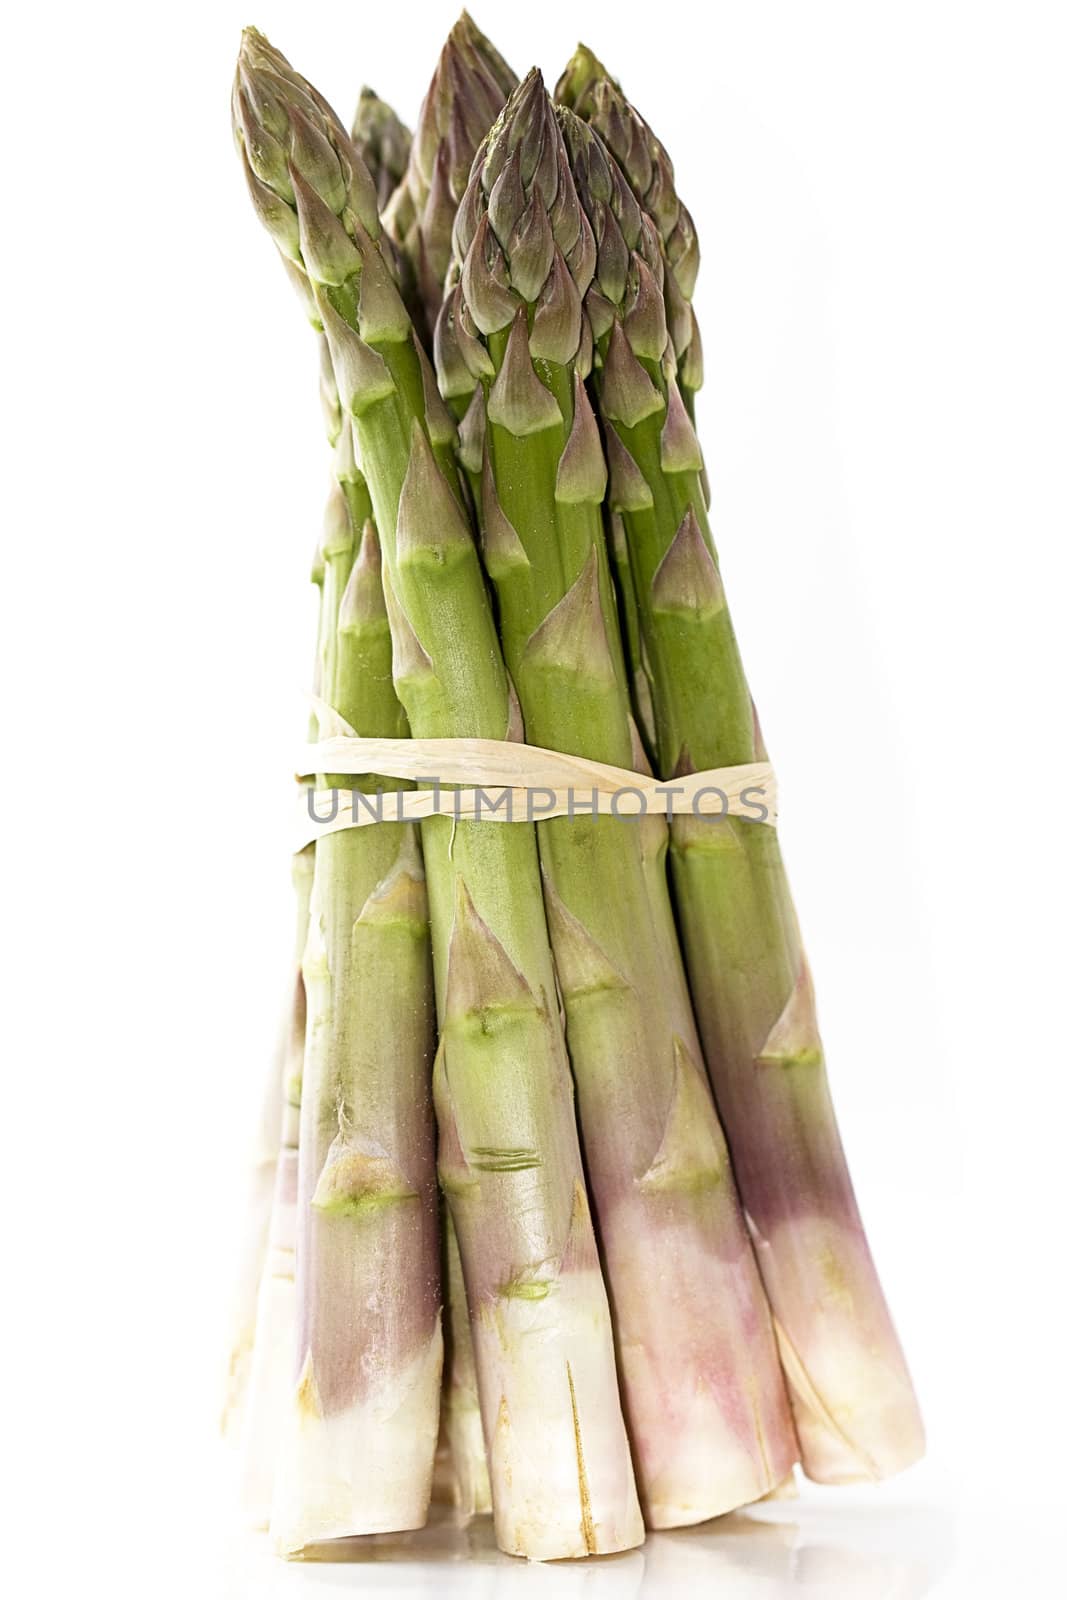 bundle green asparagus by RobStark